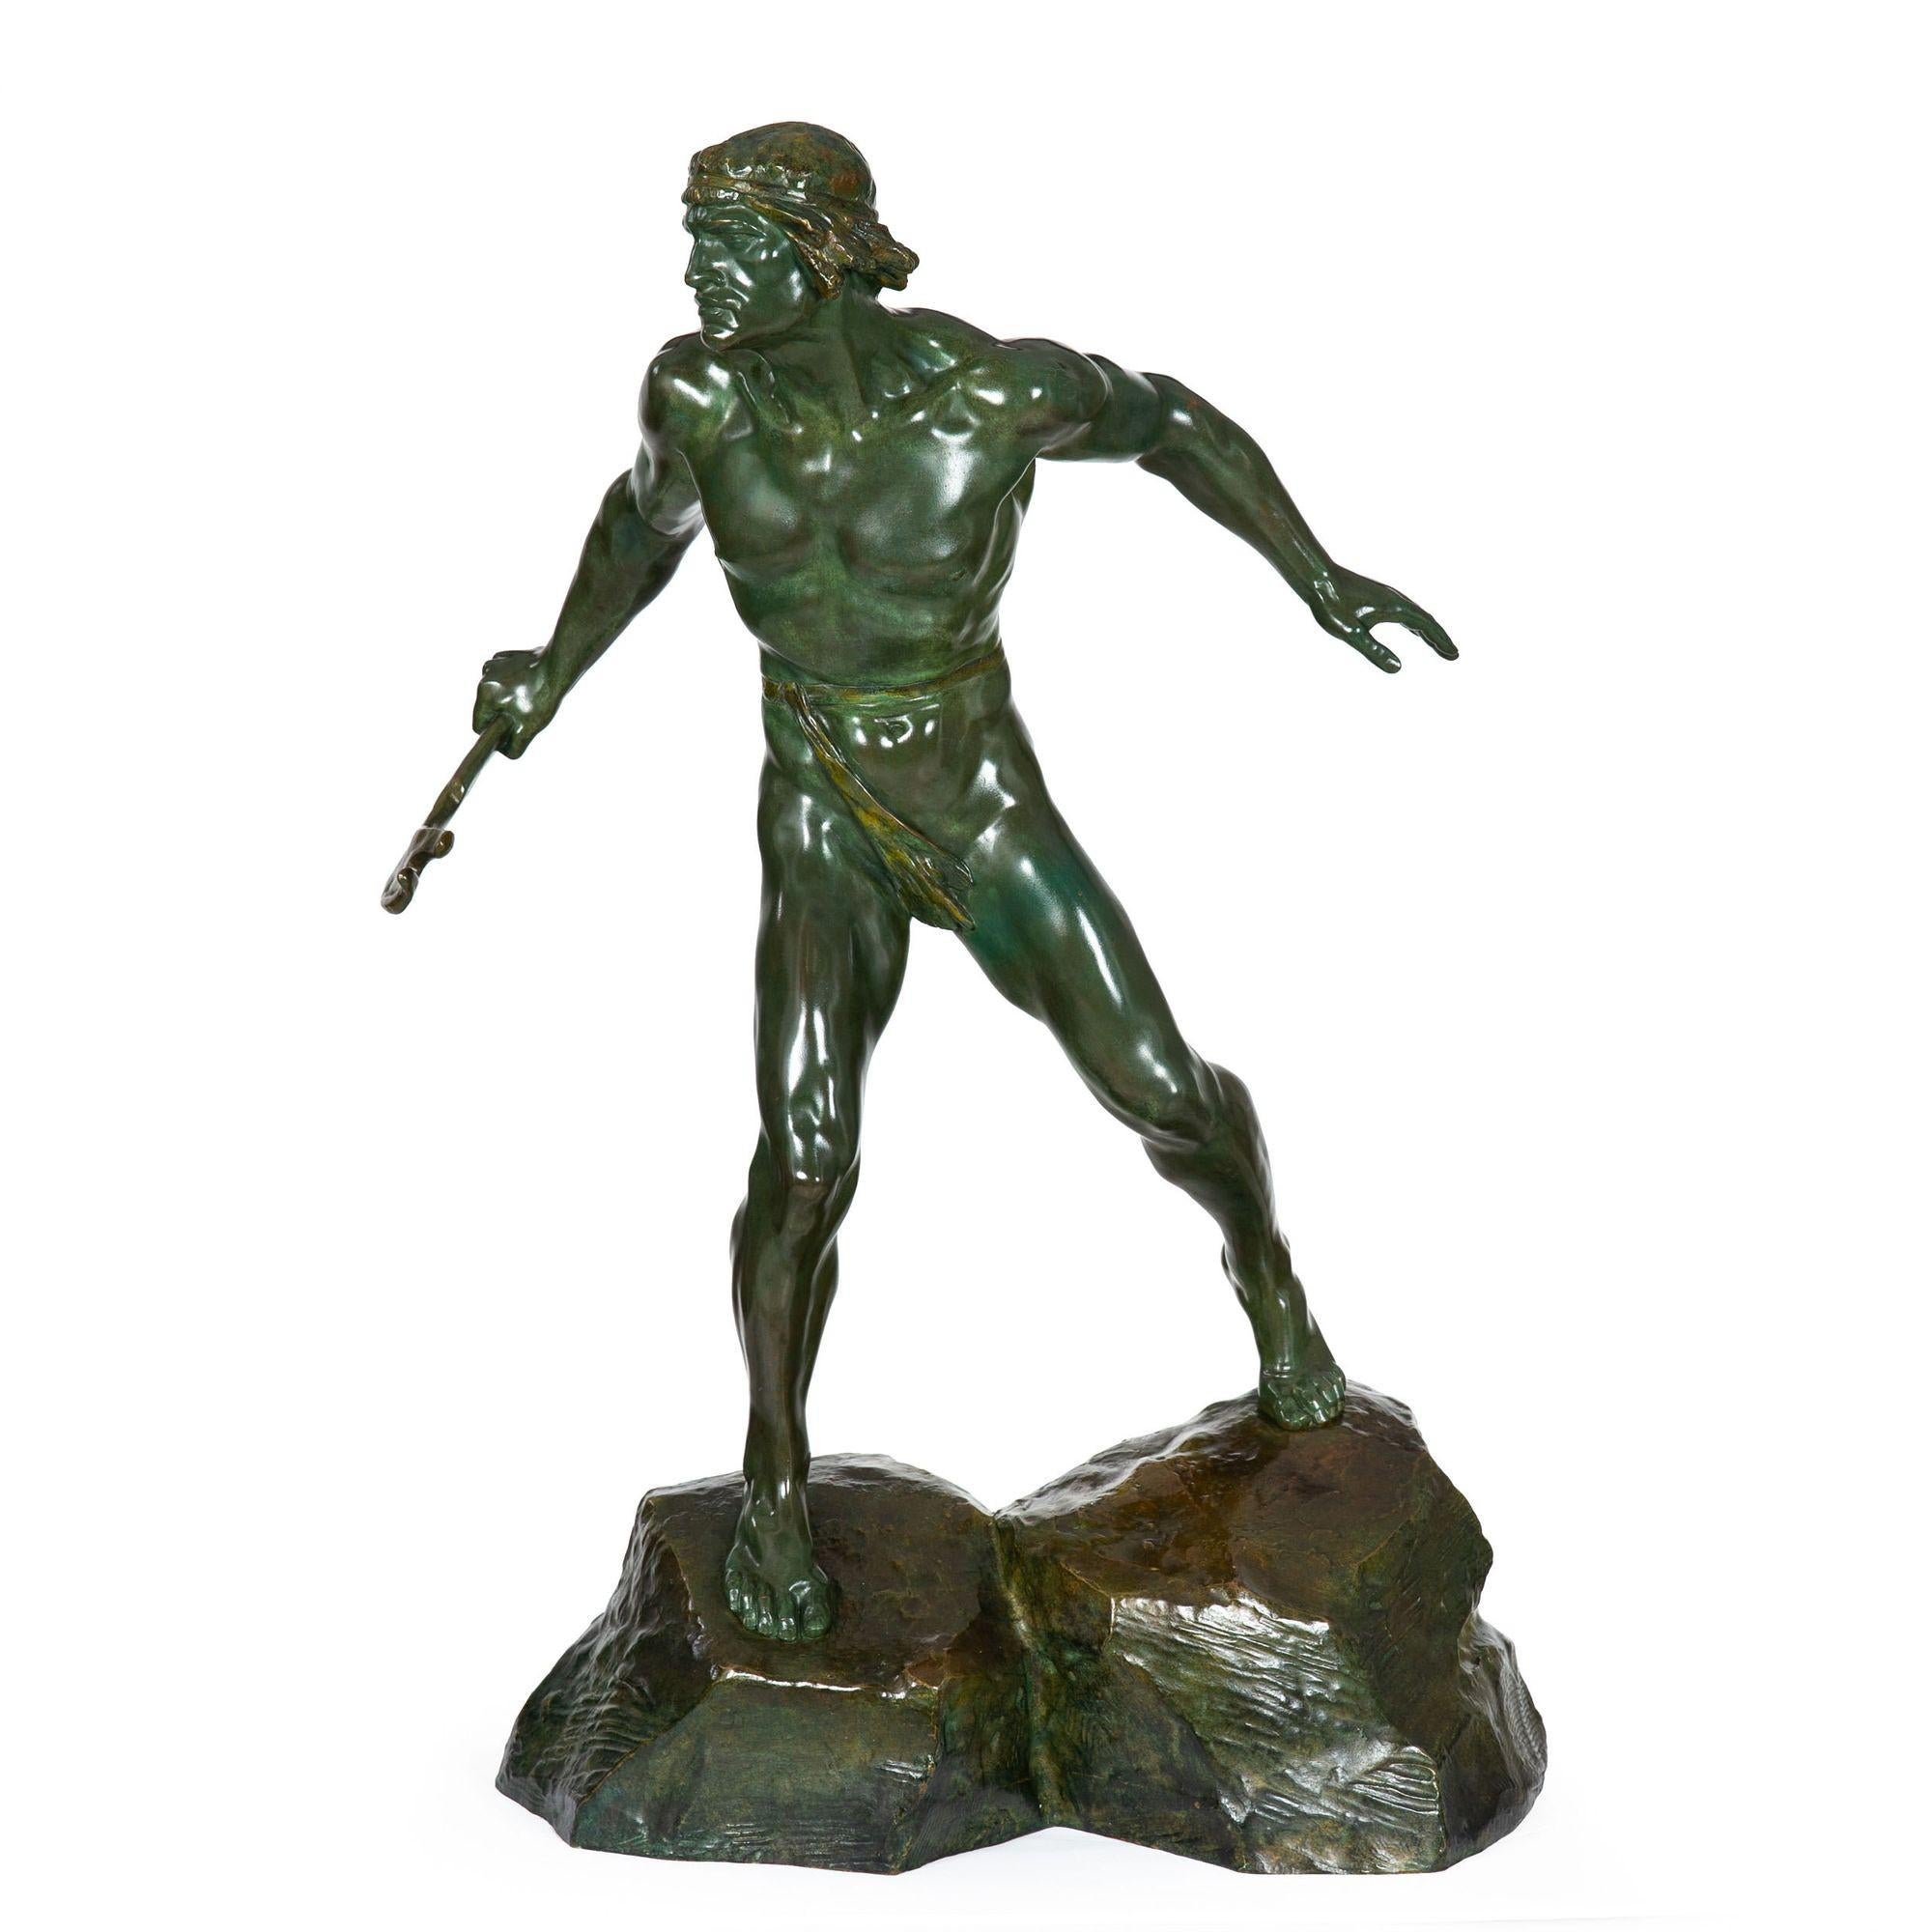 ERNEST CHARLES DIOSI
Français, 1881-1959

Modèle de guerrier debout

Bronze patiné  signé en fonte 